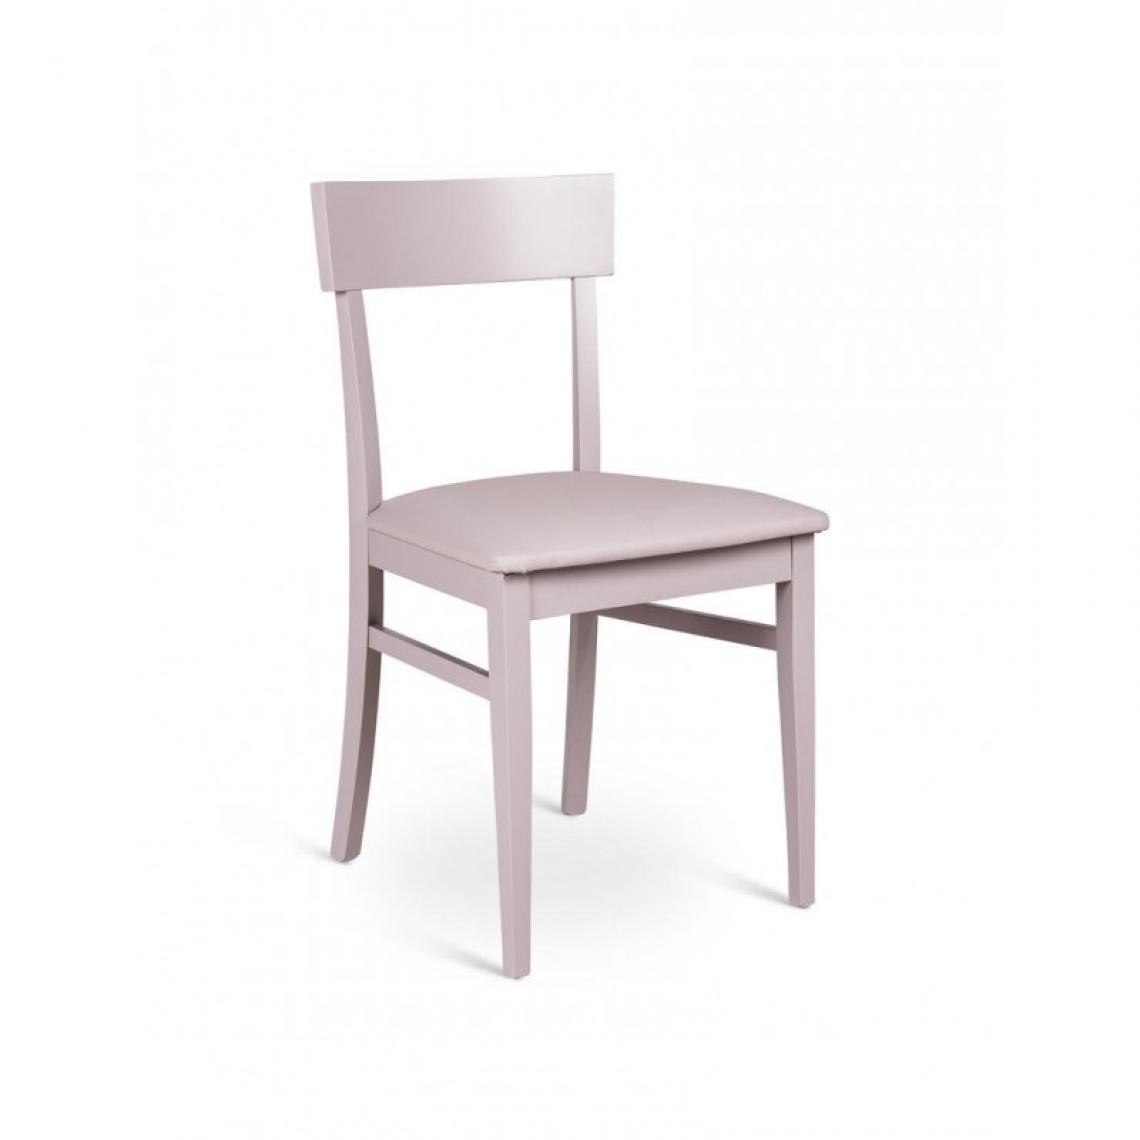 Webmarketpoint - Chaise en bois laqué gris clair avec assise en simili cuir 44x45xh. 82cm - Chaises